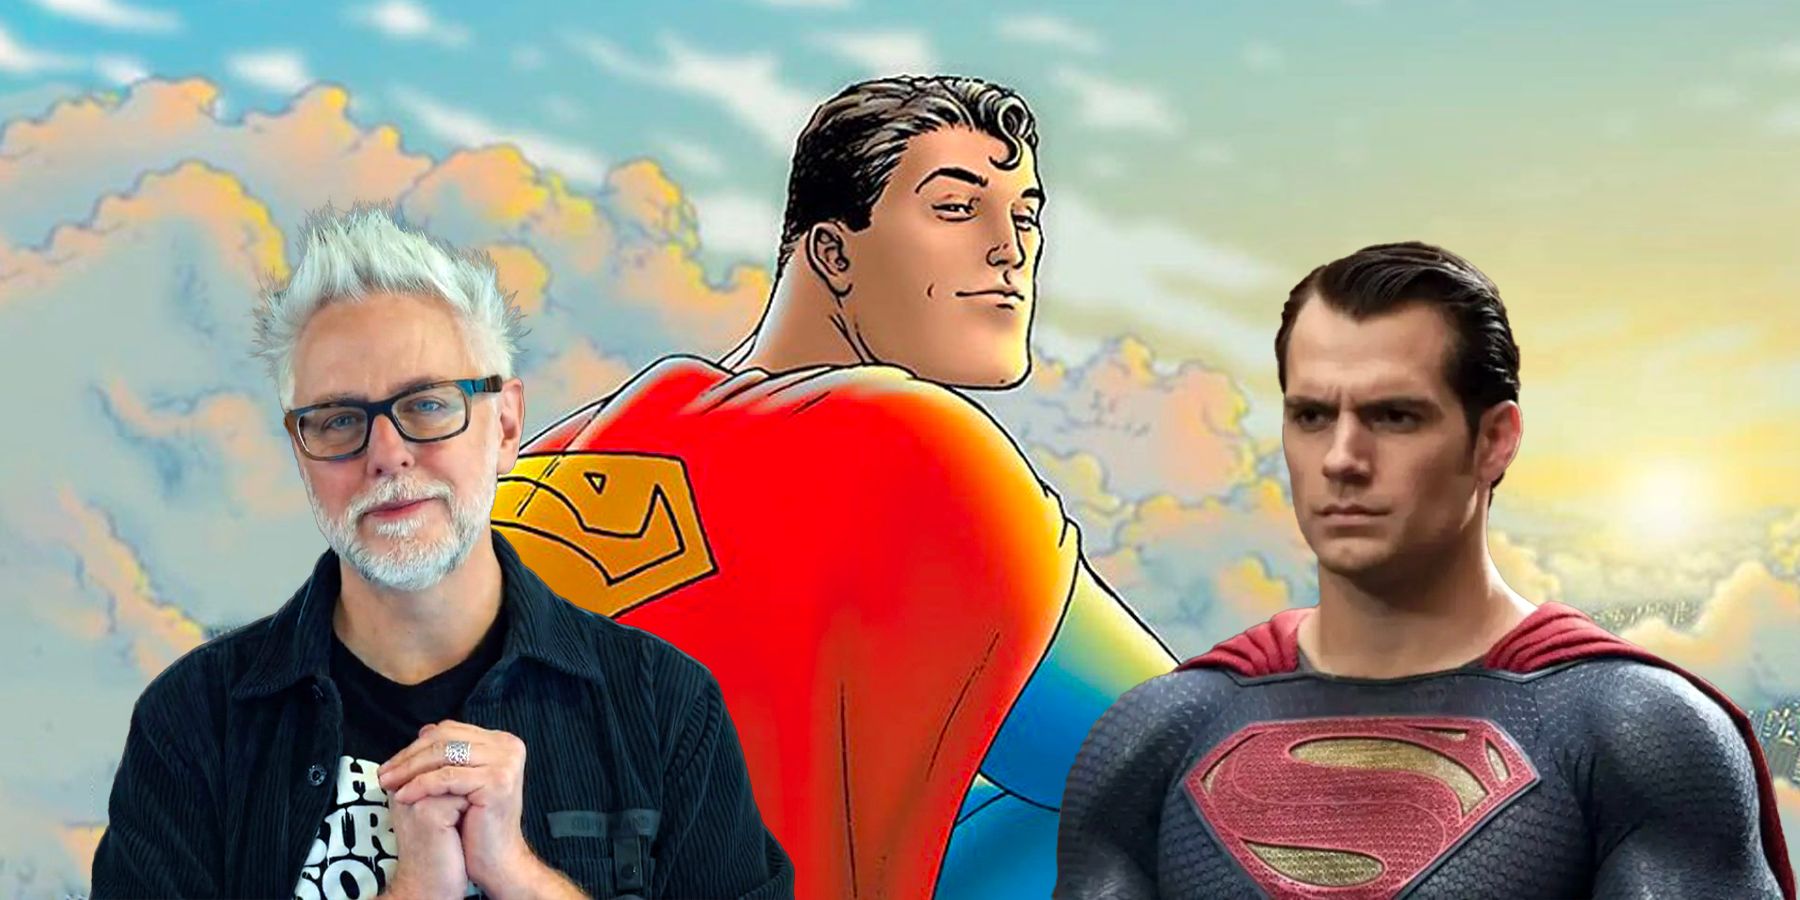 Супермен джеймса ганна. Супермен наследие. Новый костюм Супермена Джеймса гана. Костюм Супермена Джеймса Ганна.